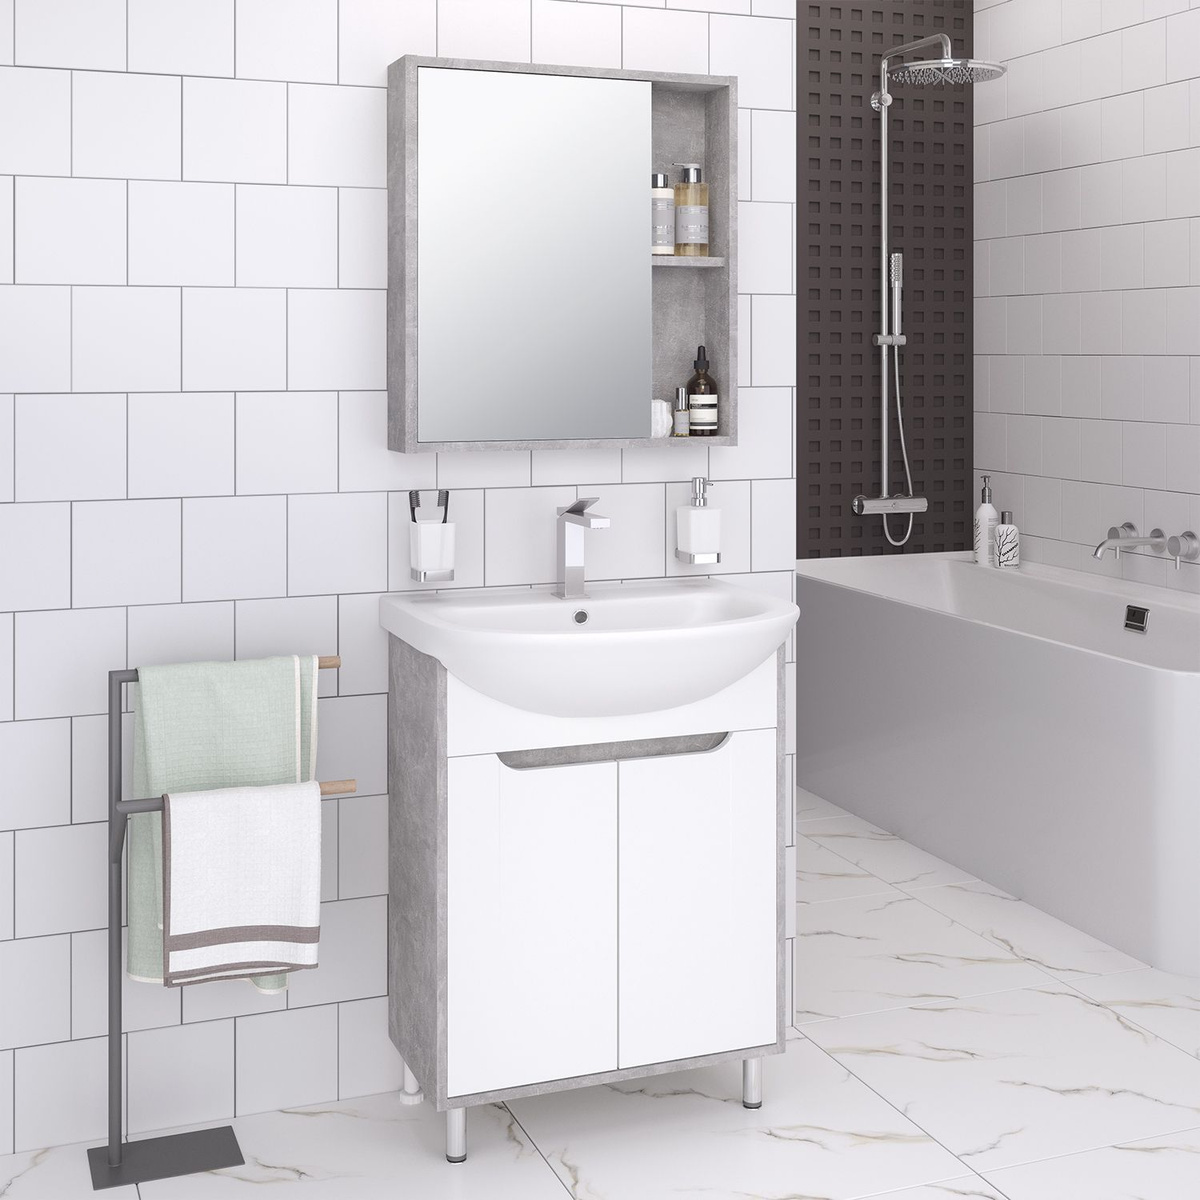 Мебель для ванной / Runo / Эко 60 / серый бетон / тумба с раковиной Уют 60 / шкаф для ванной / зеркало для ванной